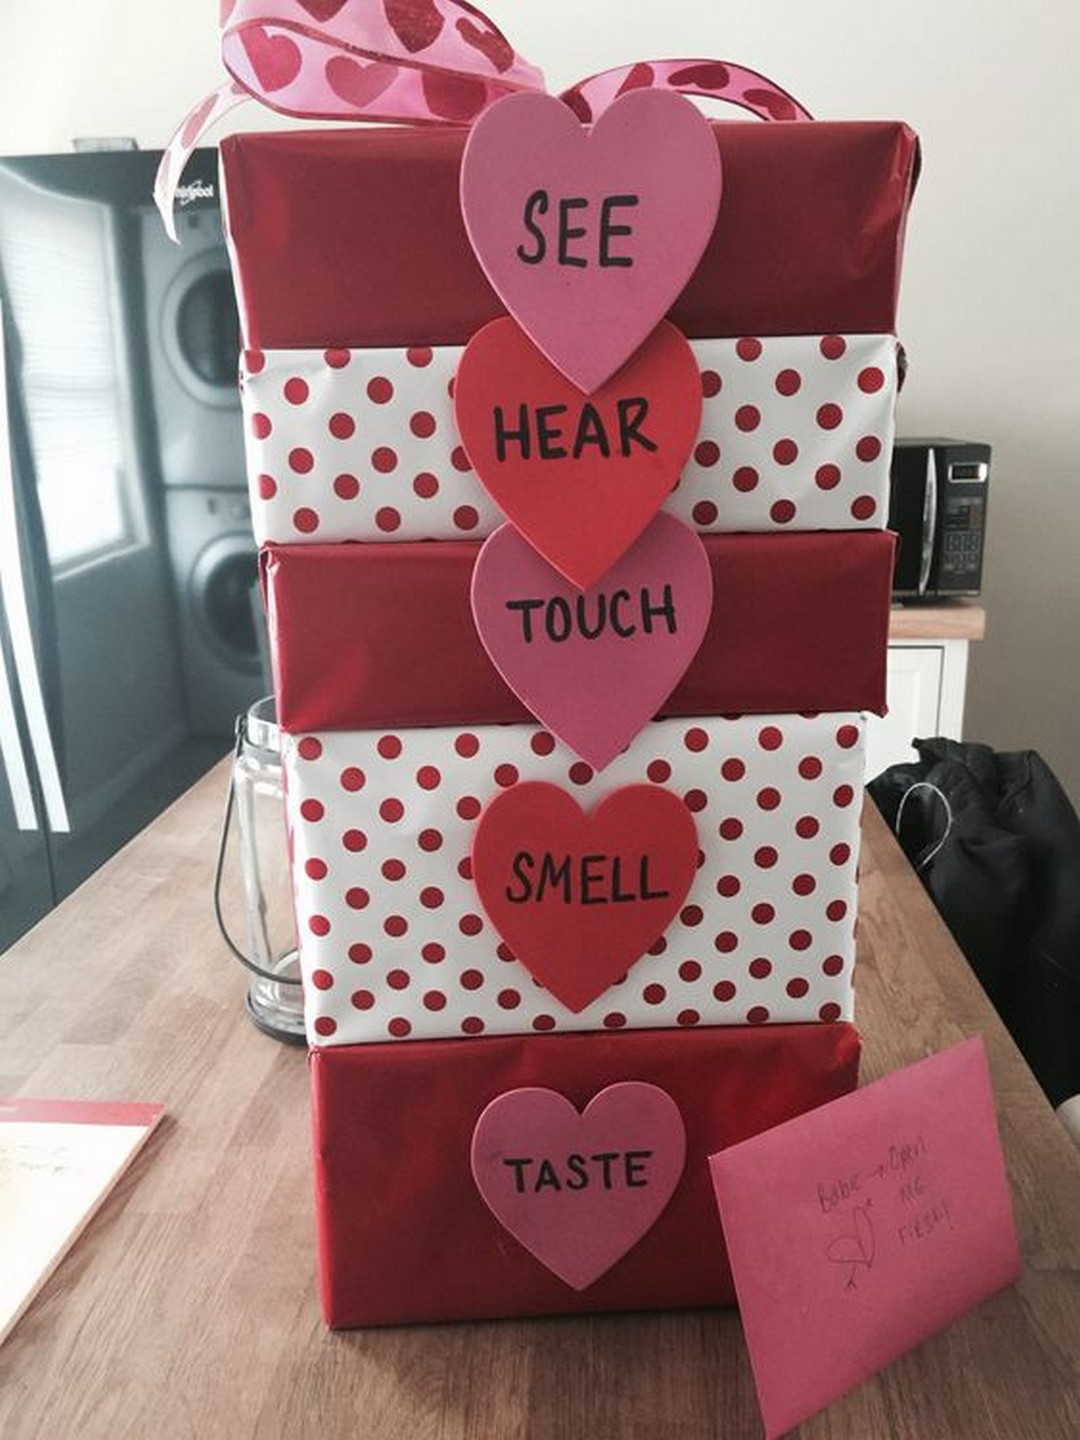 Cute Valentine Gift Ideas For Boyfriend
 Romantic DIY Valentines Day Gifts For Your Boyfriend